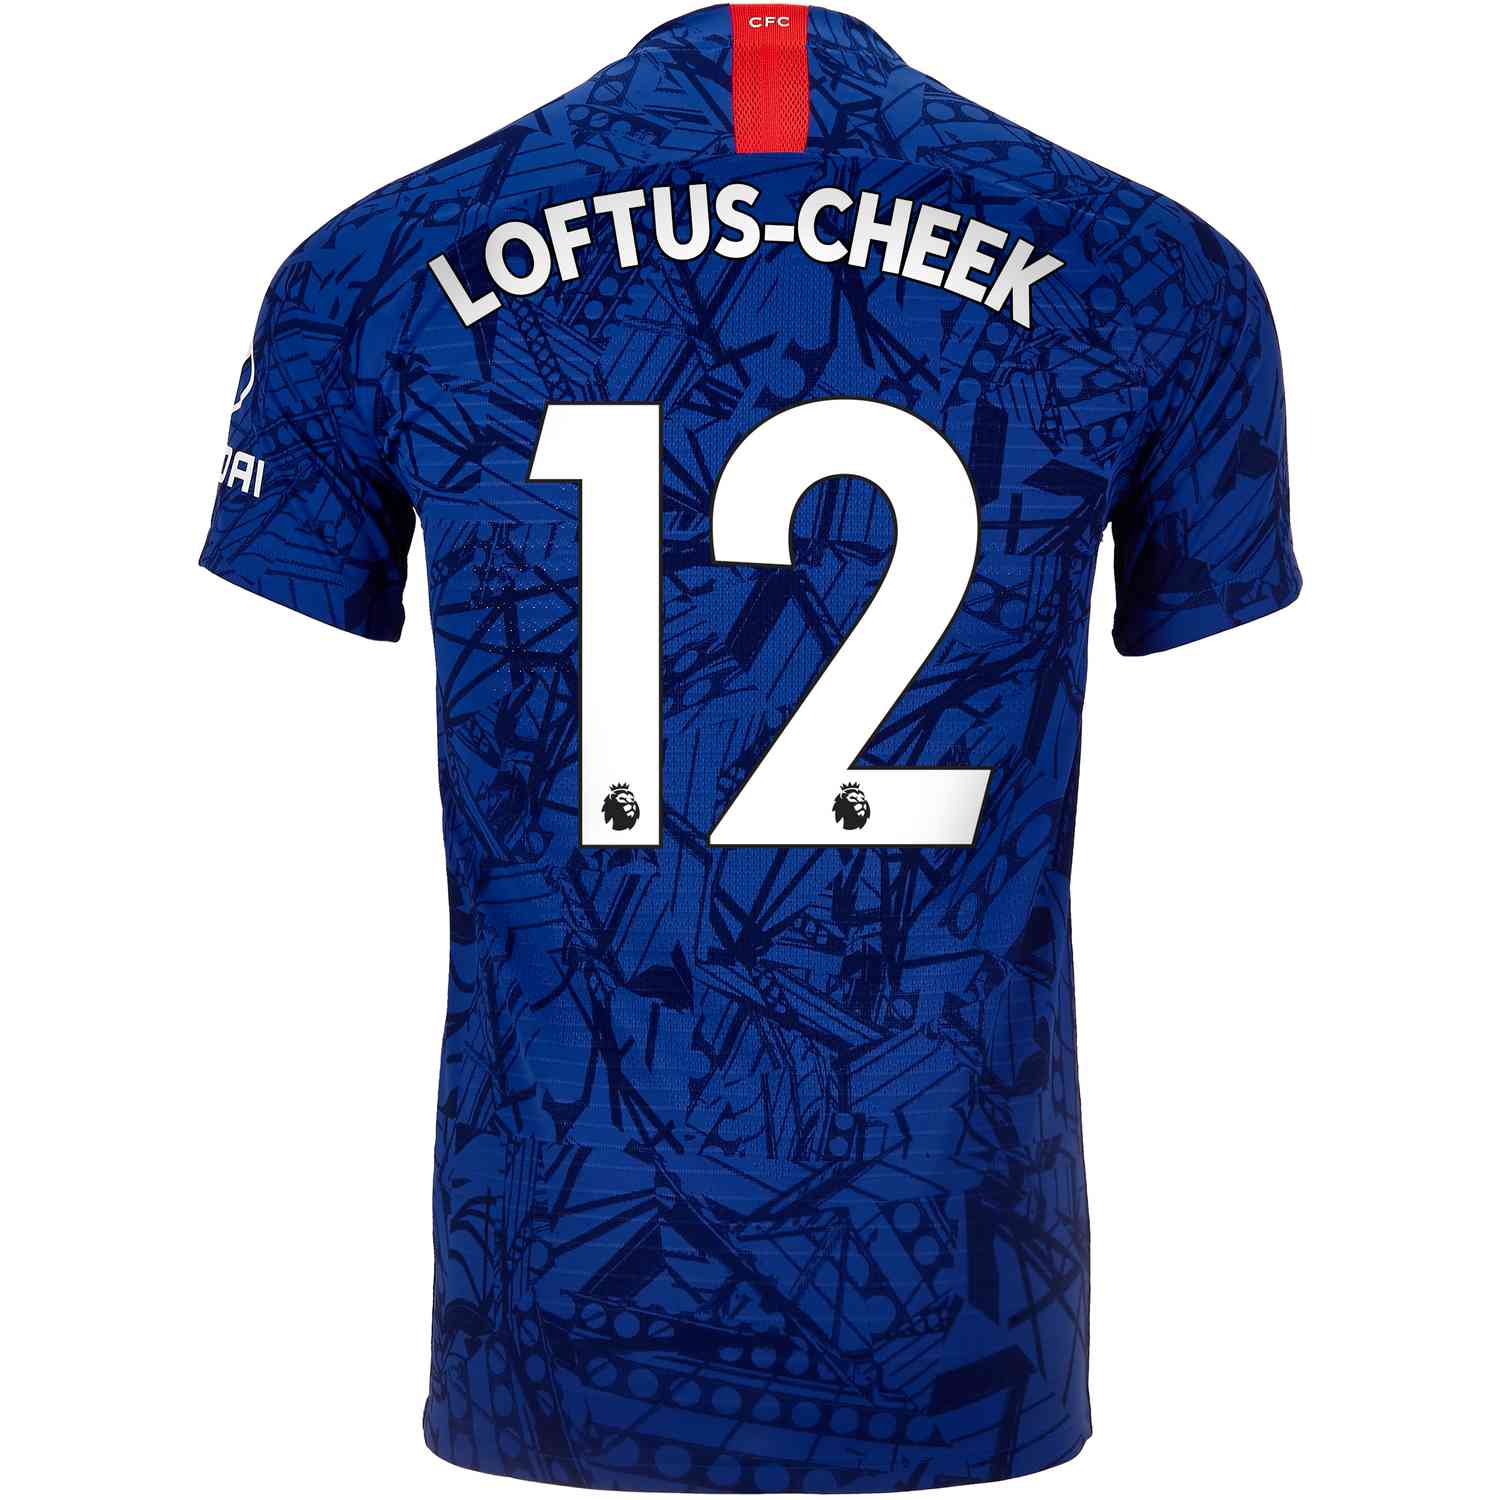 2019/20 Nike Ruben Loftus-Cheek Chelsea 